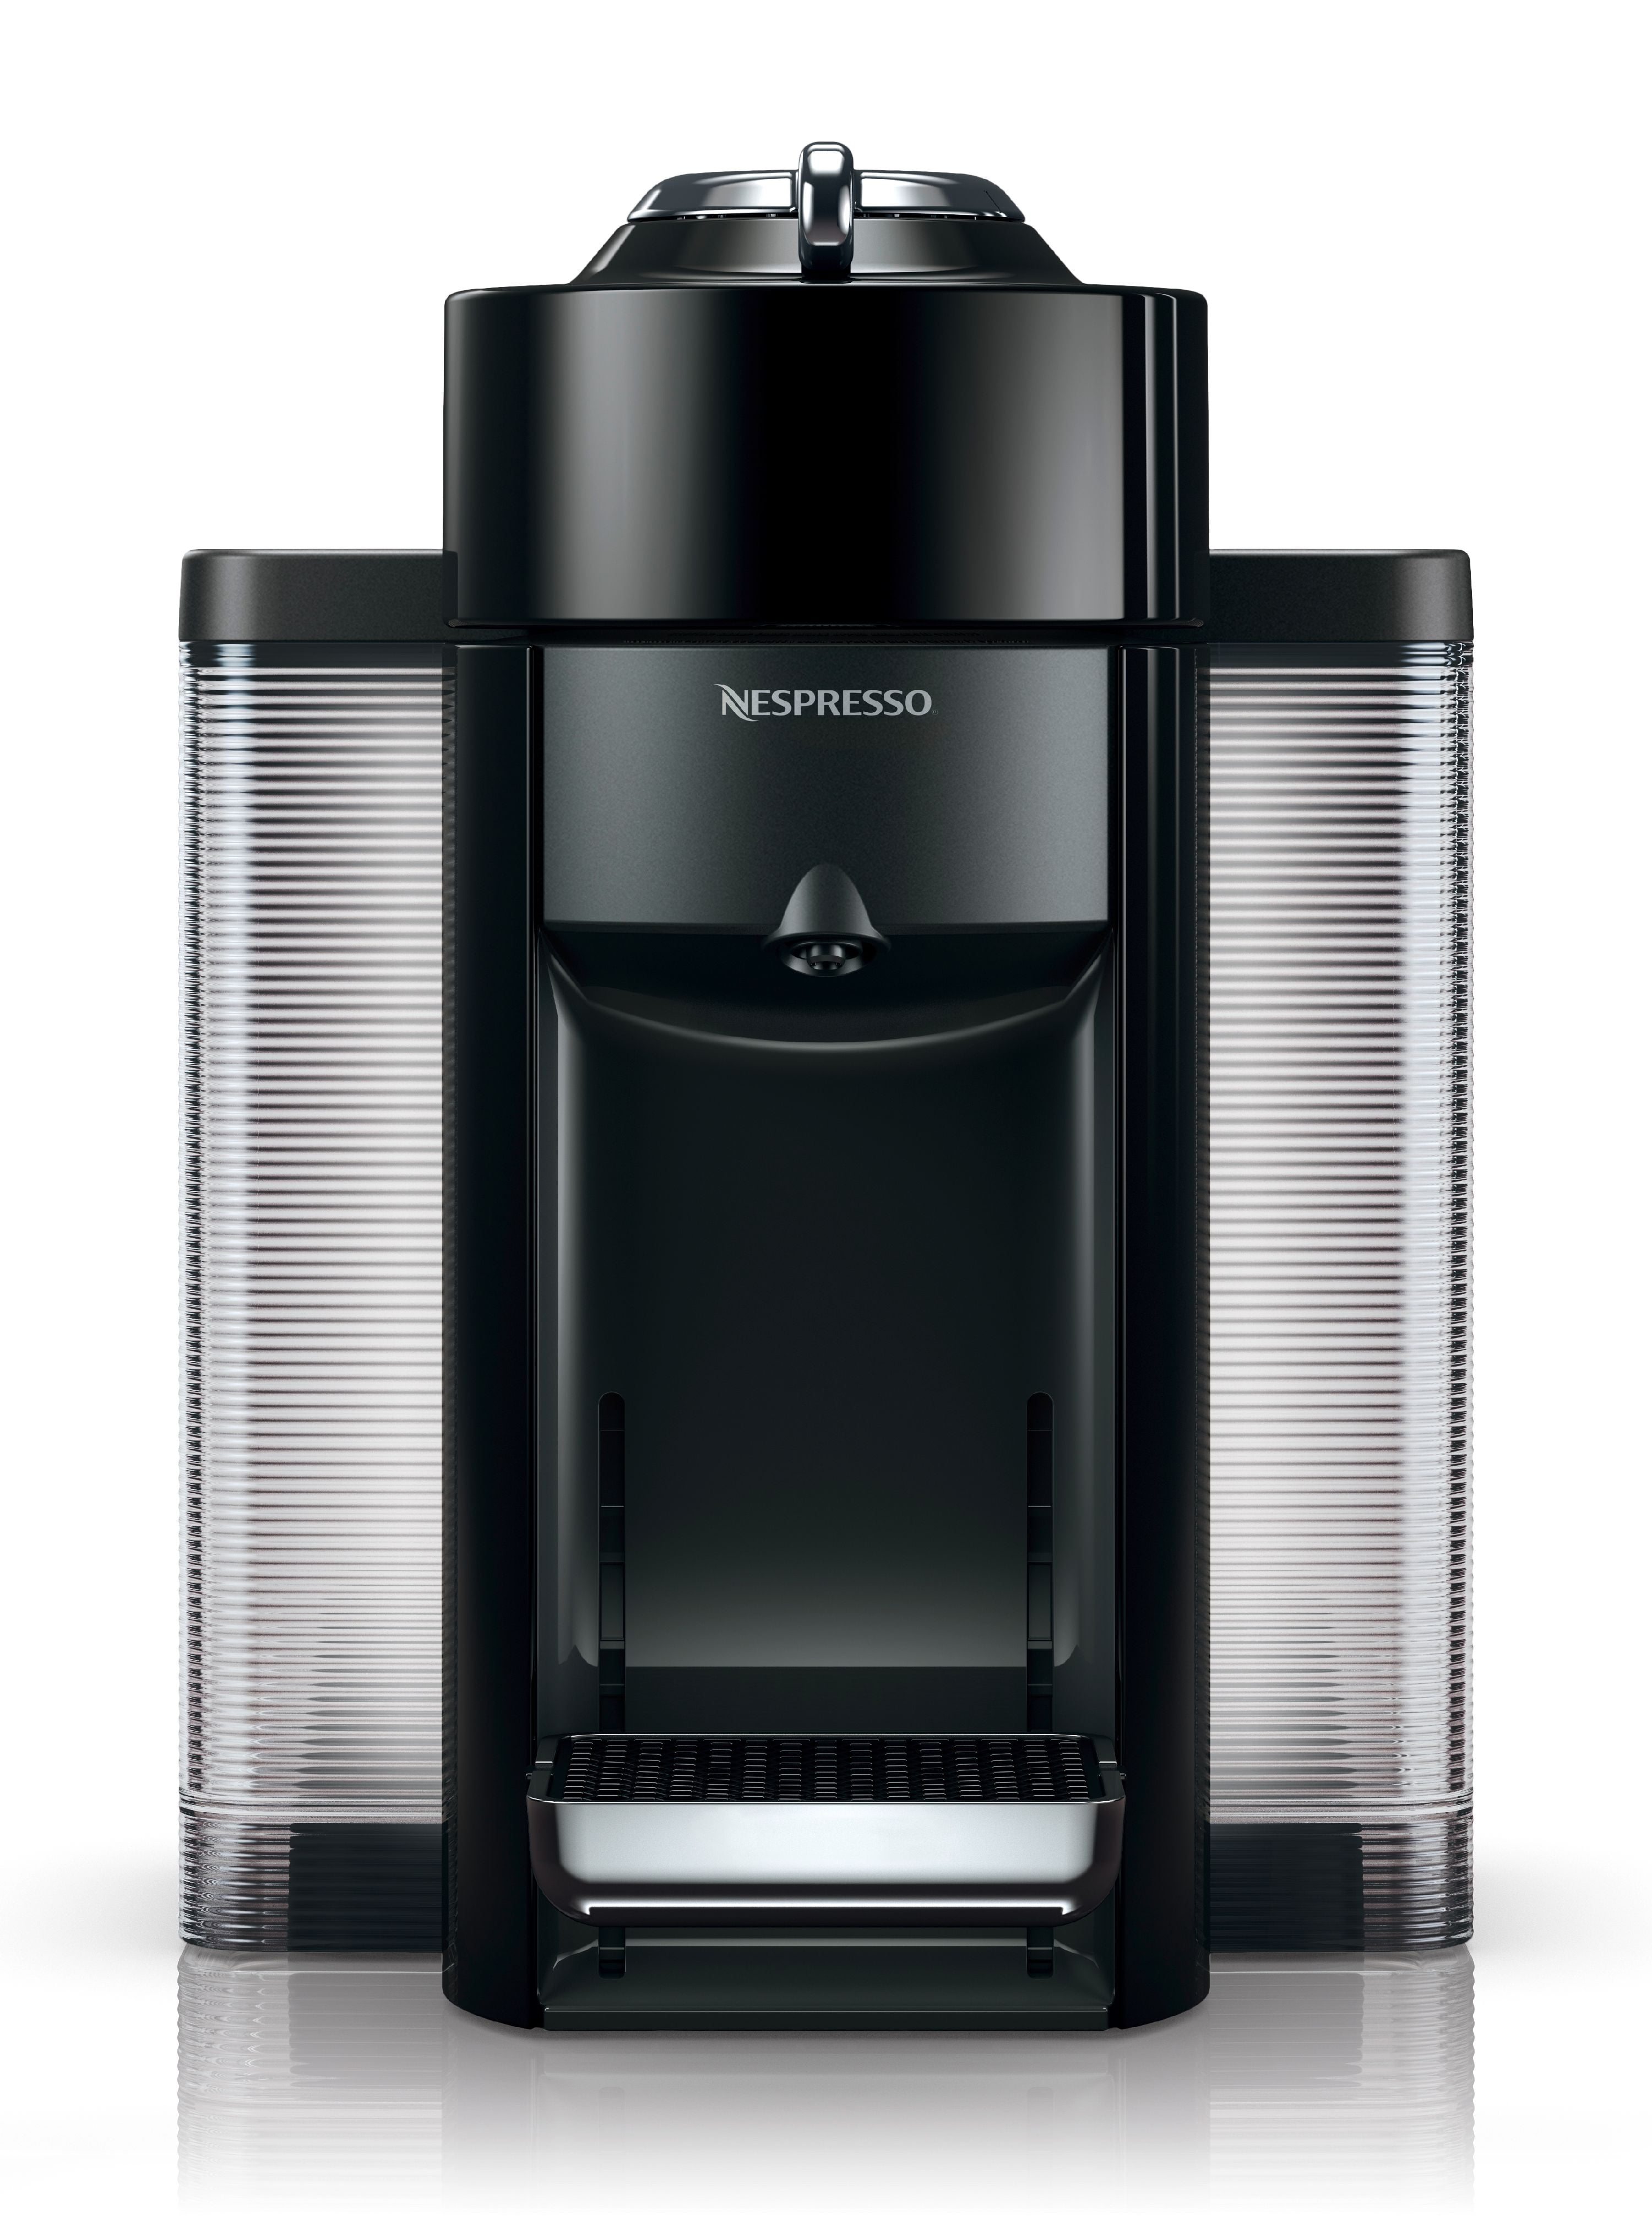 Nespresso Vertuo Lattissima Coffee & Espresso Brewing Machine with 10  Capsule Storage Capacity by DeLonghi, Black, 1-Cup